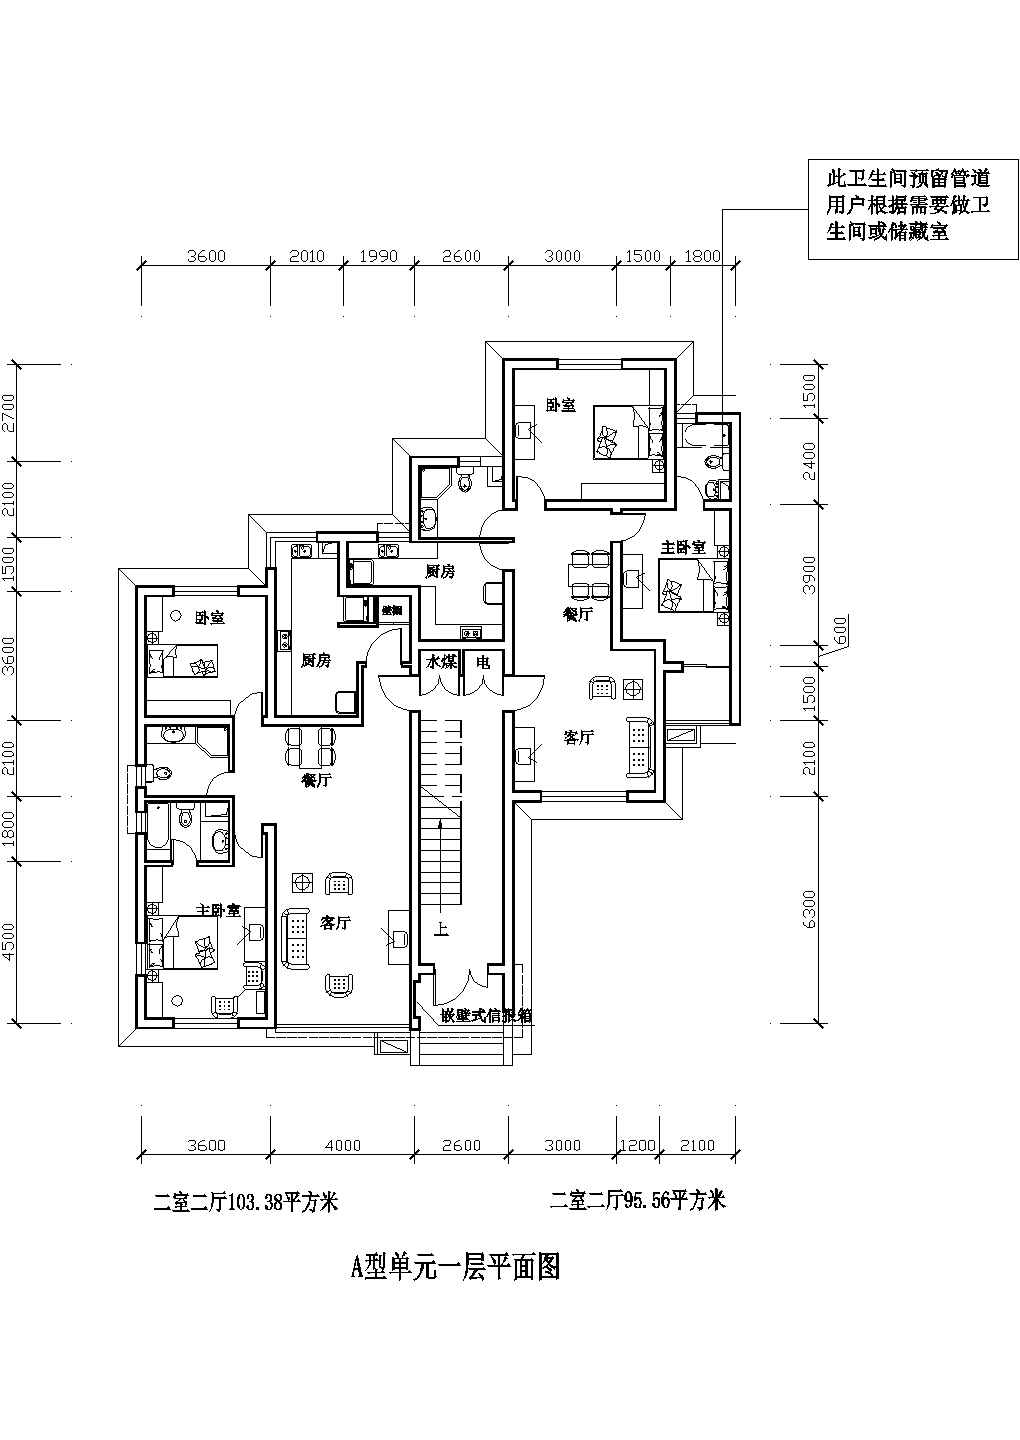 二室二厅103 平米Cad户型图设计（绘图细致）